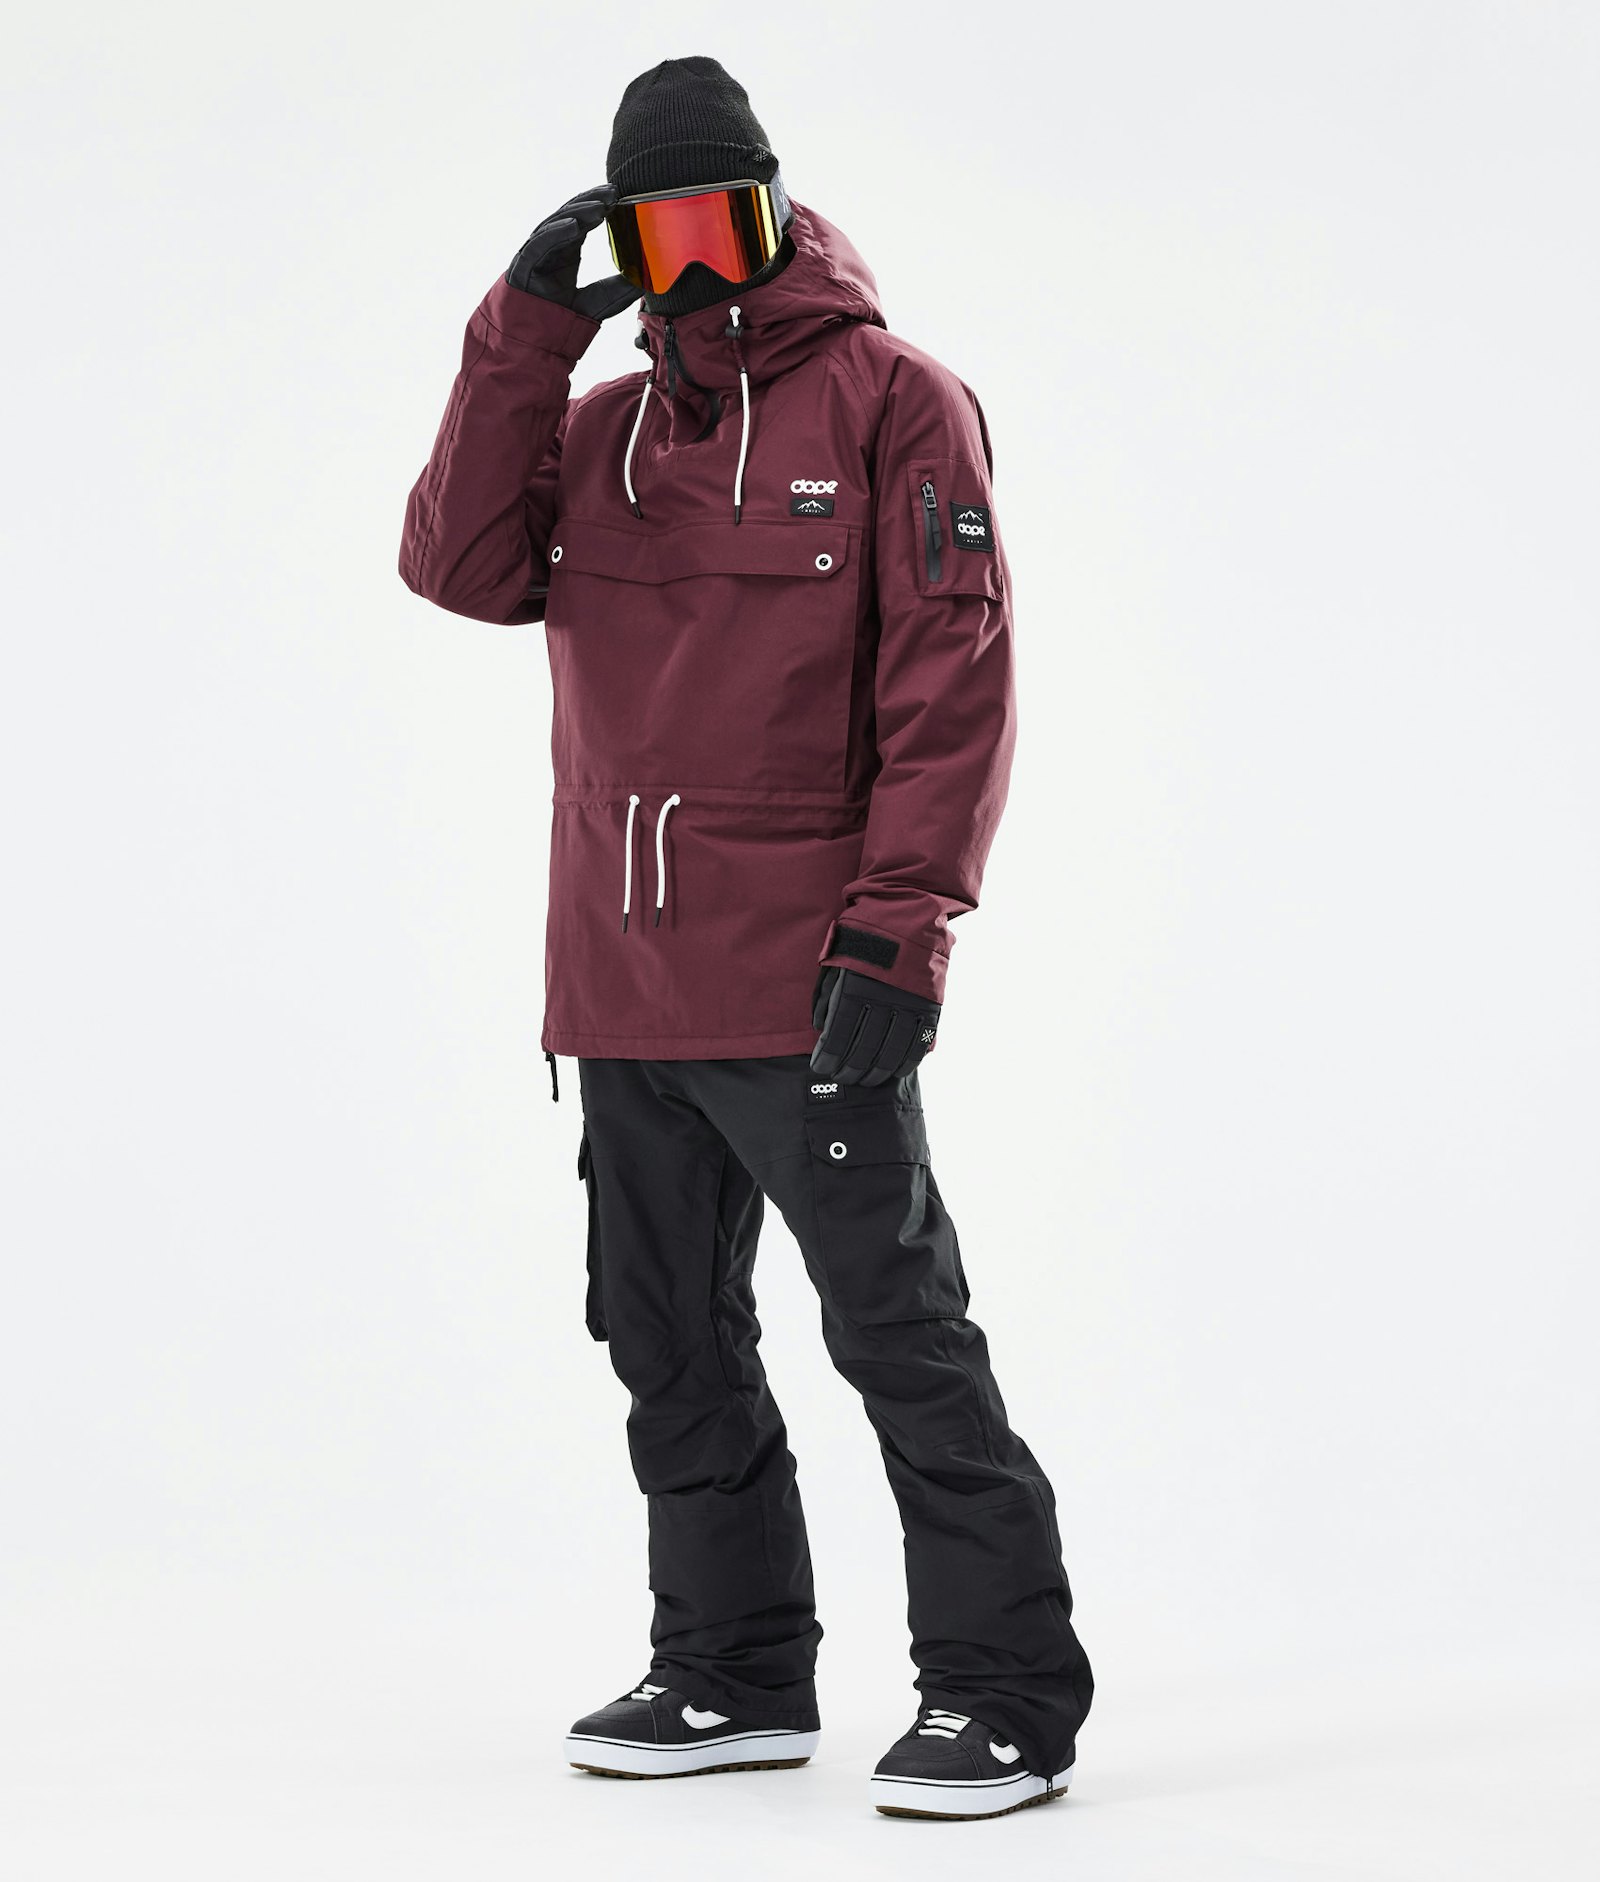 Annok 2021 Veste Snowboard Homme Burgundy